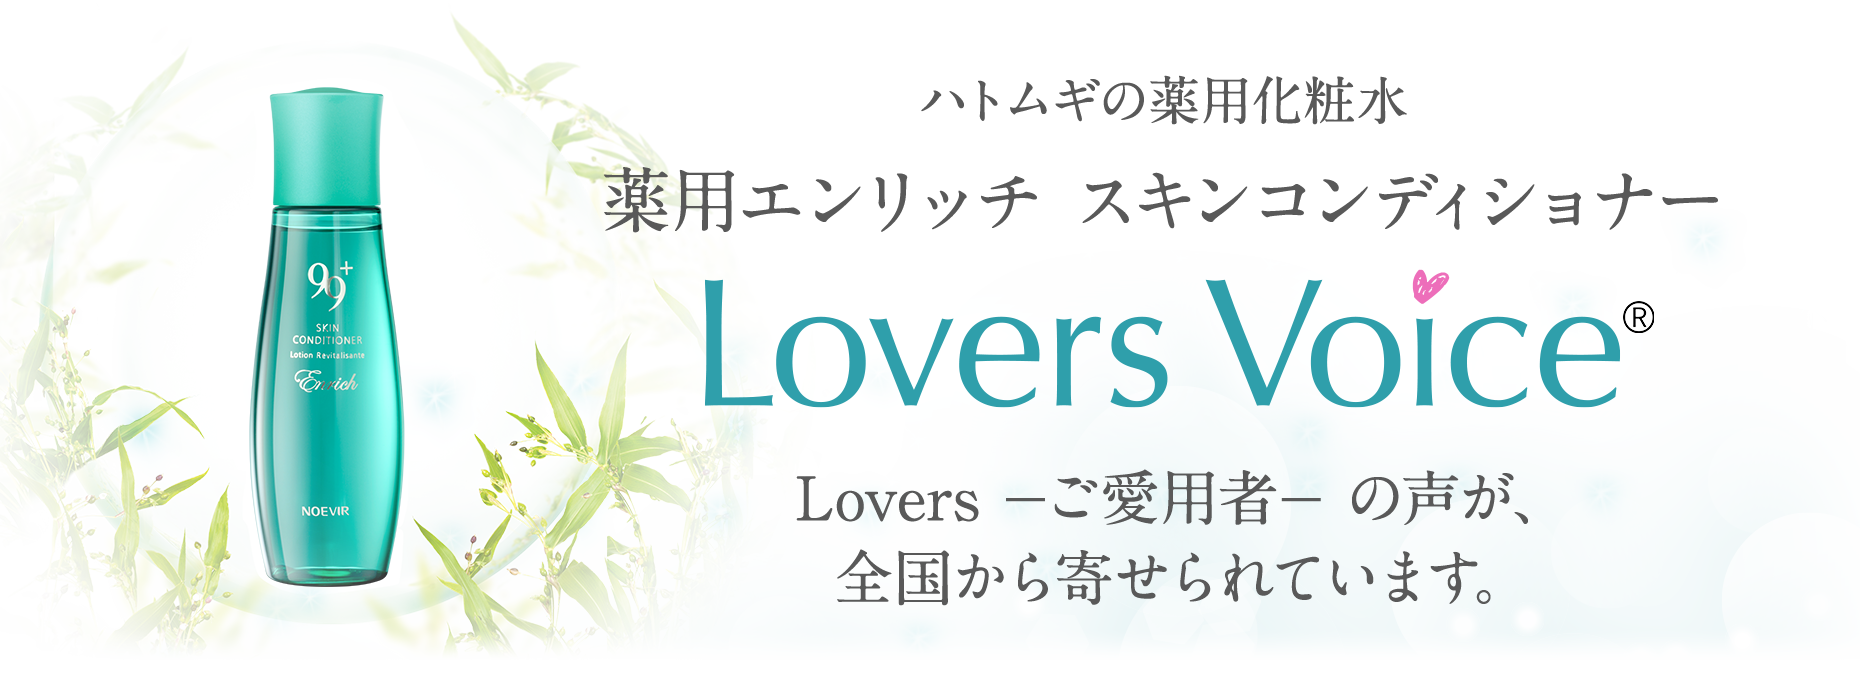 ハトムギの薬用化粧水 薬用エンリッチ スキンコンディショナー Lovers Voice